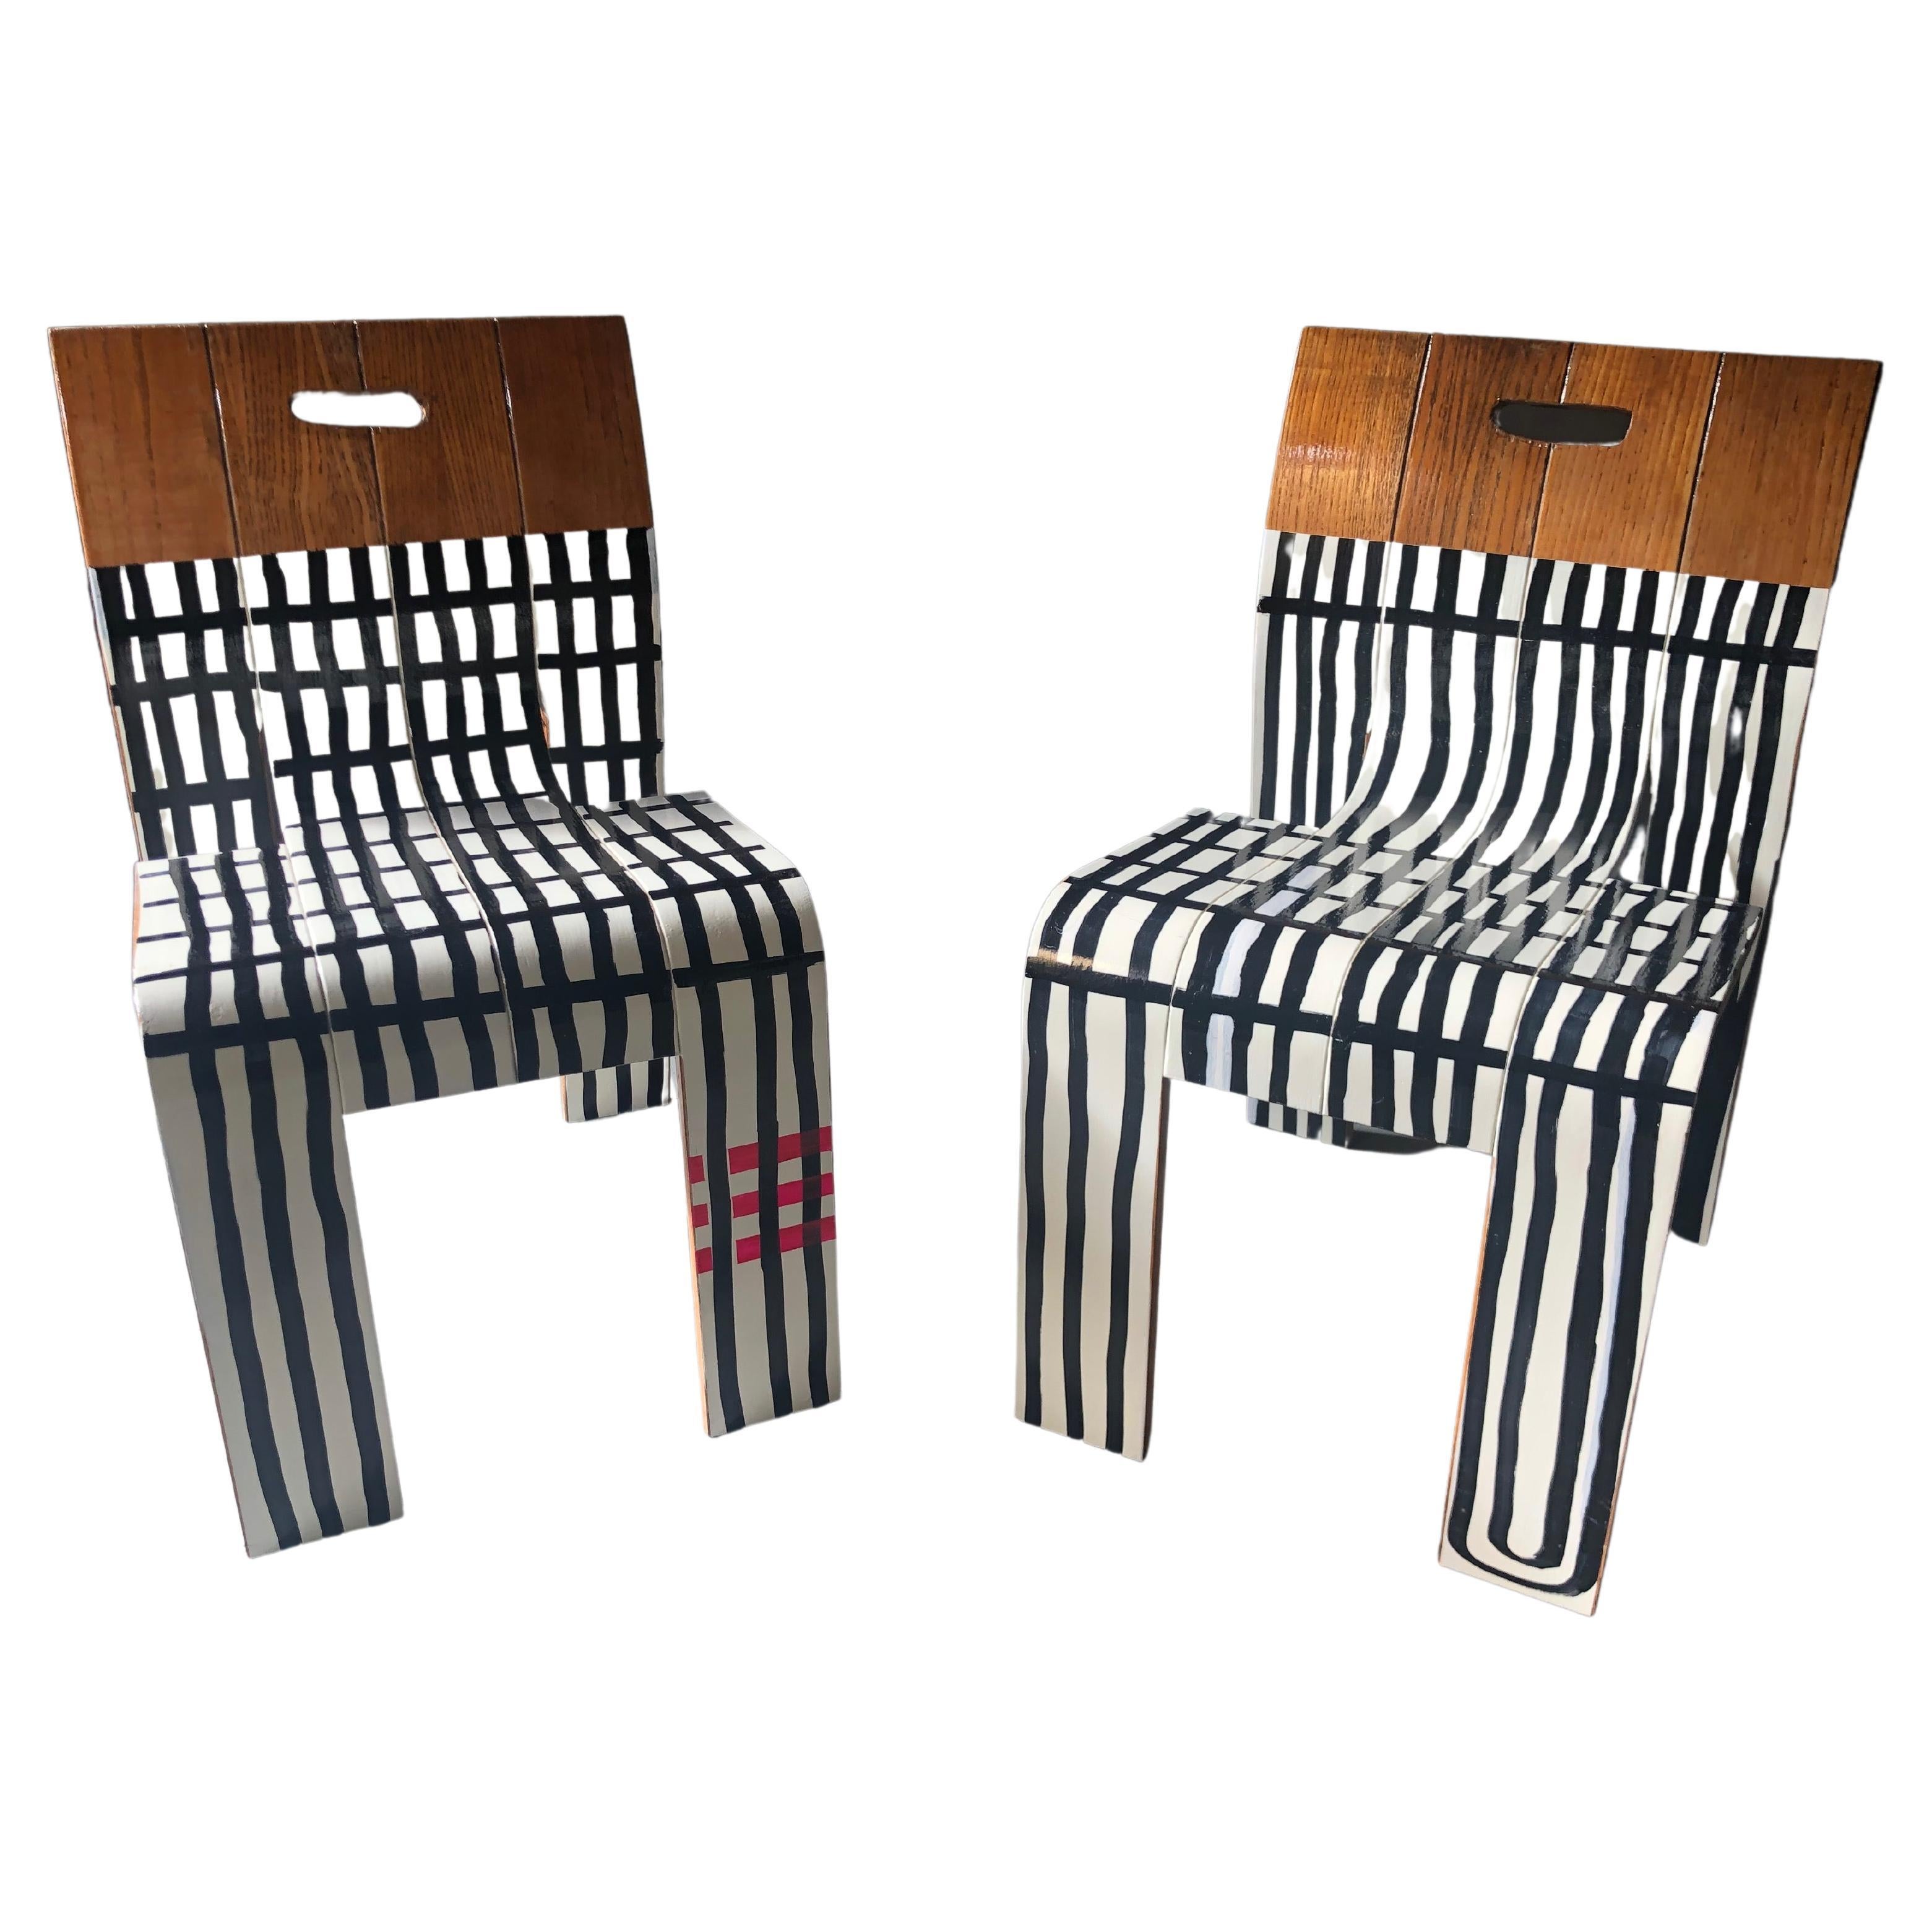 Deux chaises à rayures contemporaines de Markus Friedrich Staab